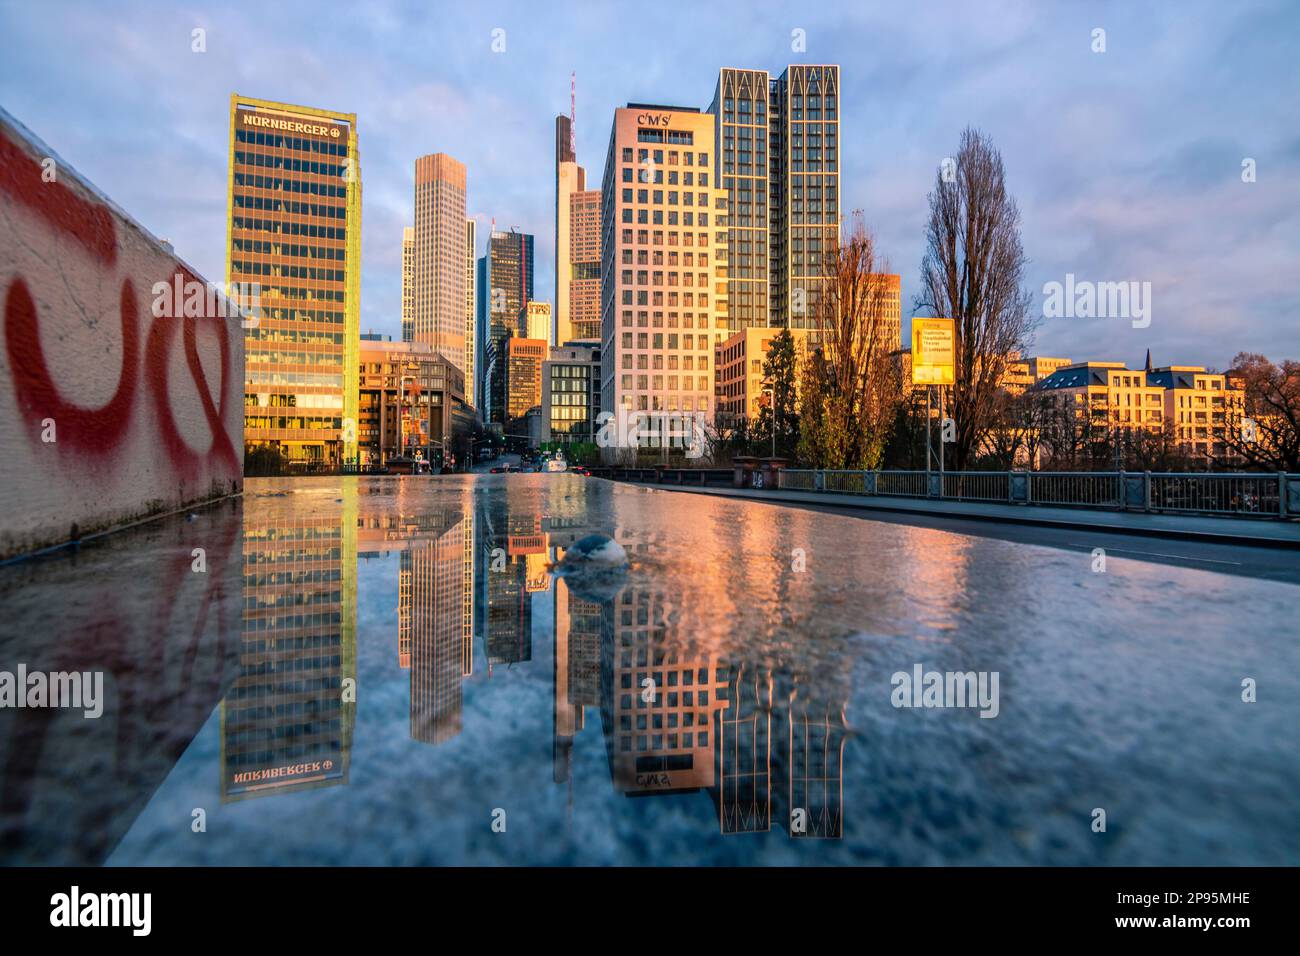 Reflexionen in Frankfurt am Main. Die Stadt, Straßen und Wolkenkratzer spiegeln sich nach Regen in den Pfützen der Straßen wider. Bankenviertel und Wolkenkratzer am Morgen Stockfoto